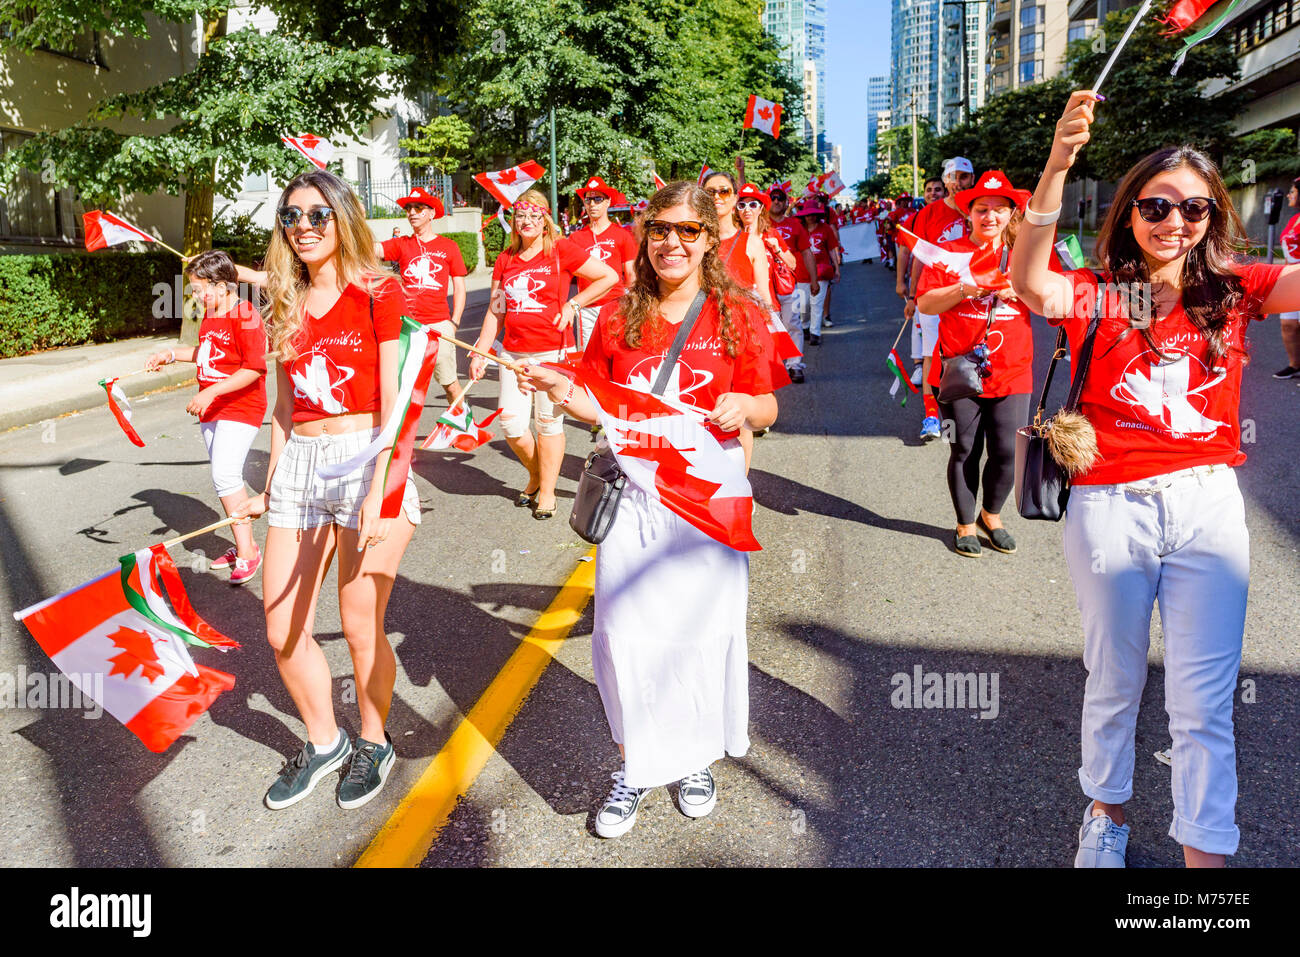 Gruppo iraniano celebra essendo canadese in Canada parata del giorno, Vancouver, British Columbia, Canada. Foto Stock